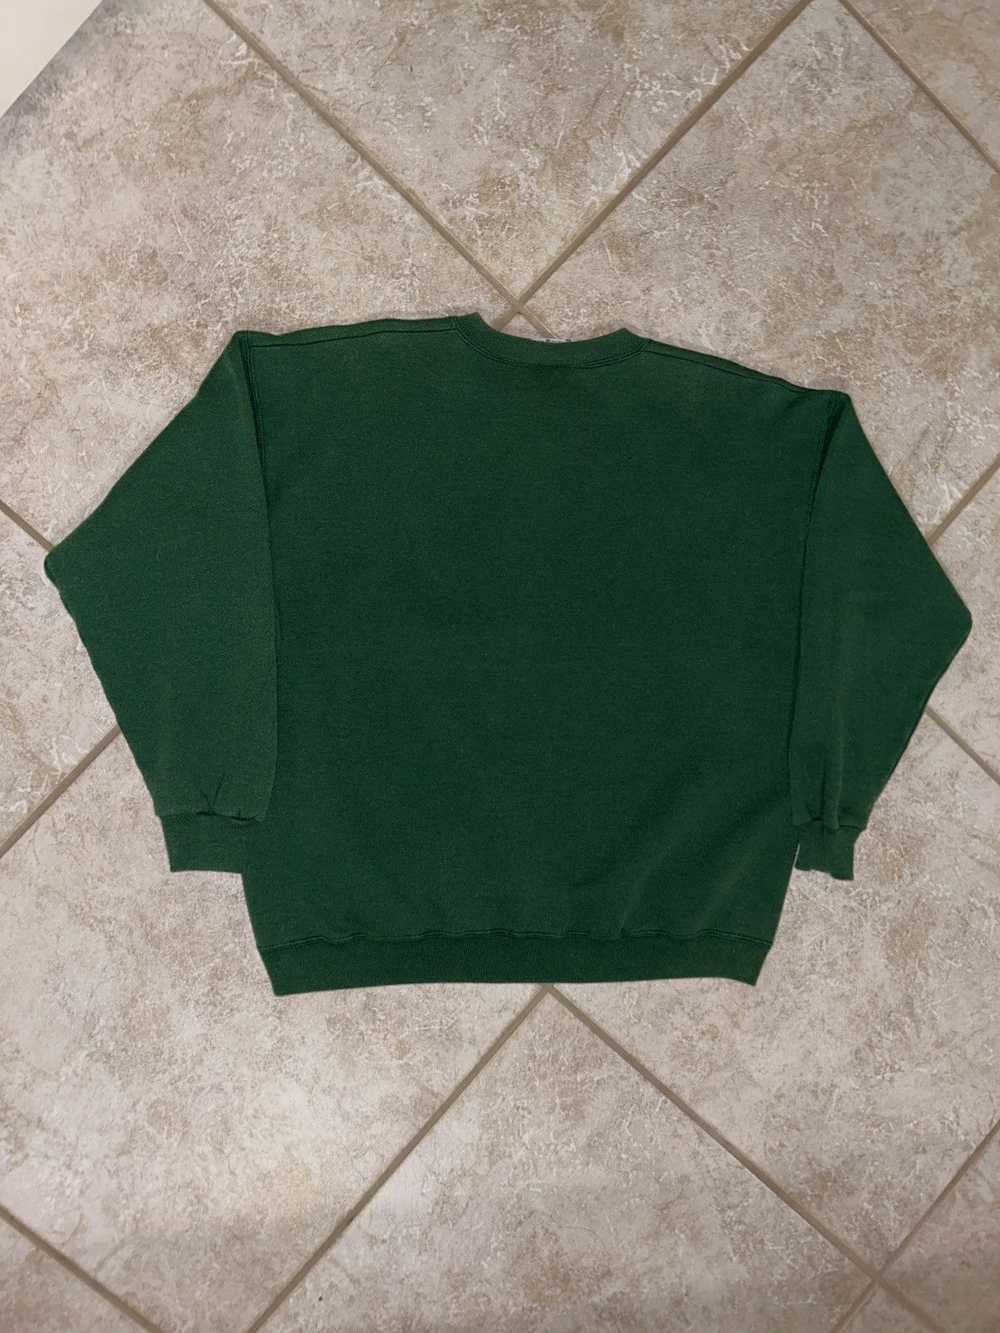 Lee × Streetwear × Vintage Vintage Lee sweatshirt - image 4